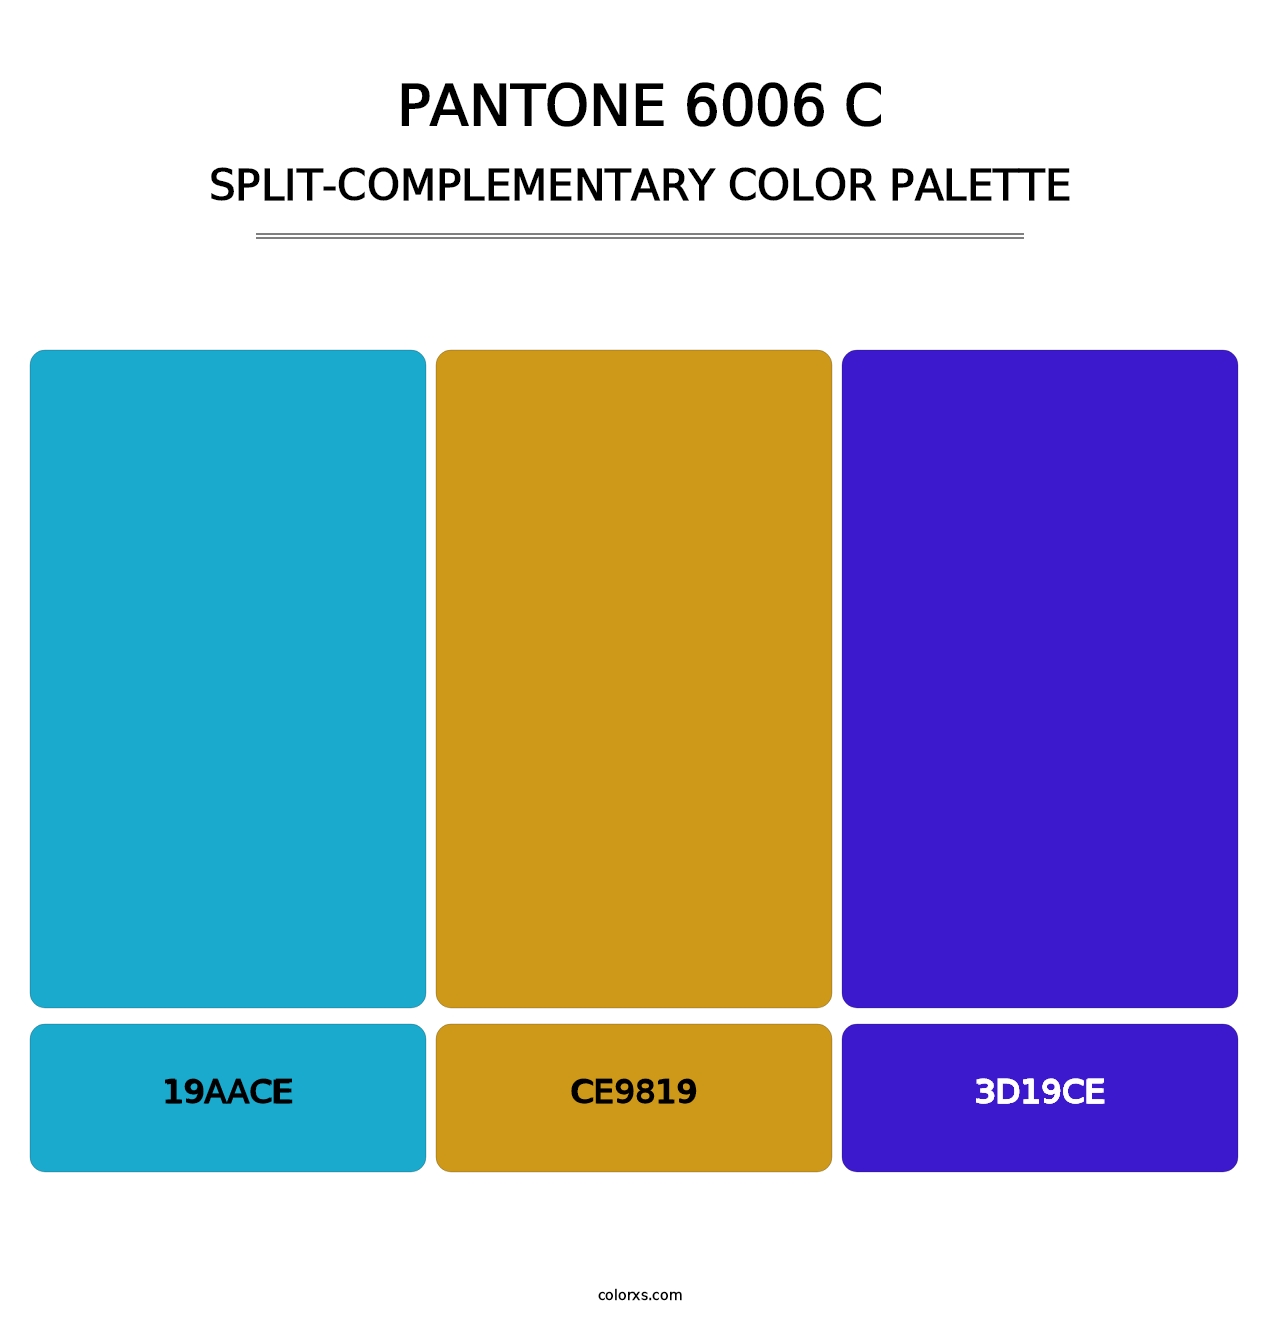 PANTONE 6006 C - Split-Complementary Color Palette